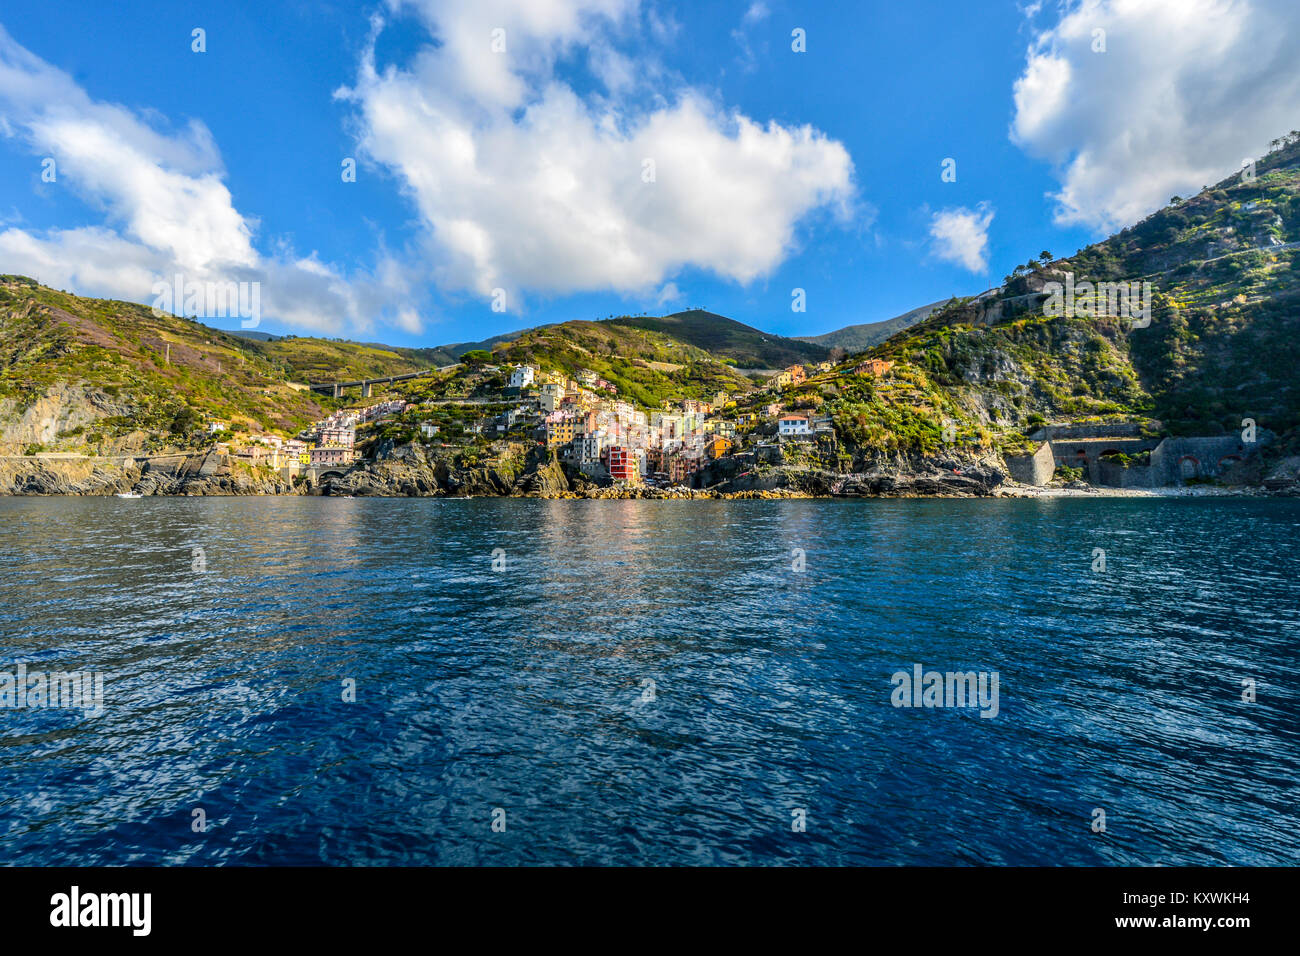 Das bunte Dorf am Meer von Riomaggiore Italien, Teil der Cinque Terre an der ligurischen Küste des Mittelmeers Stockfoto